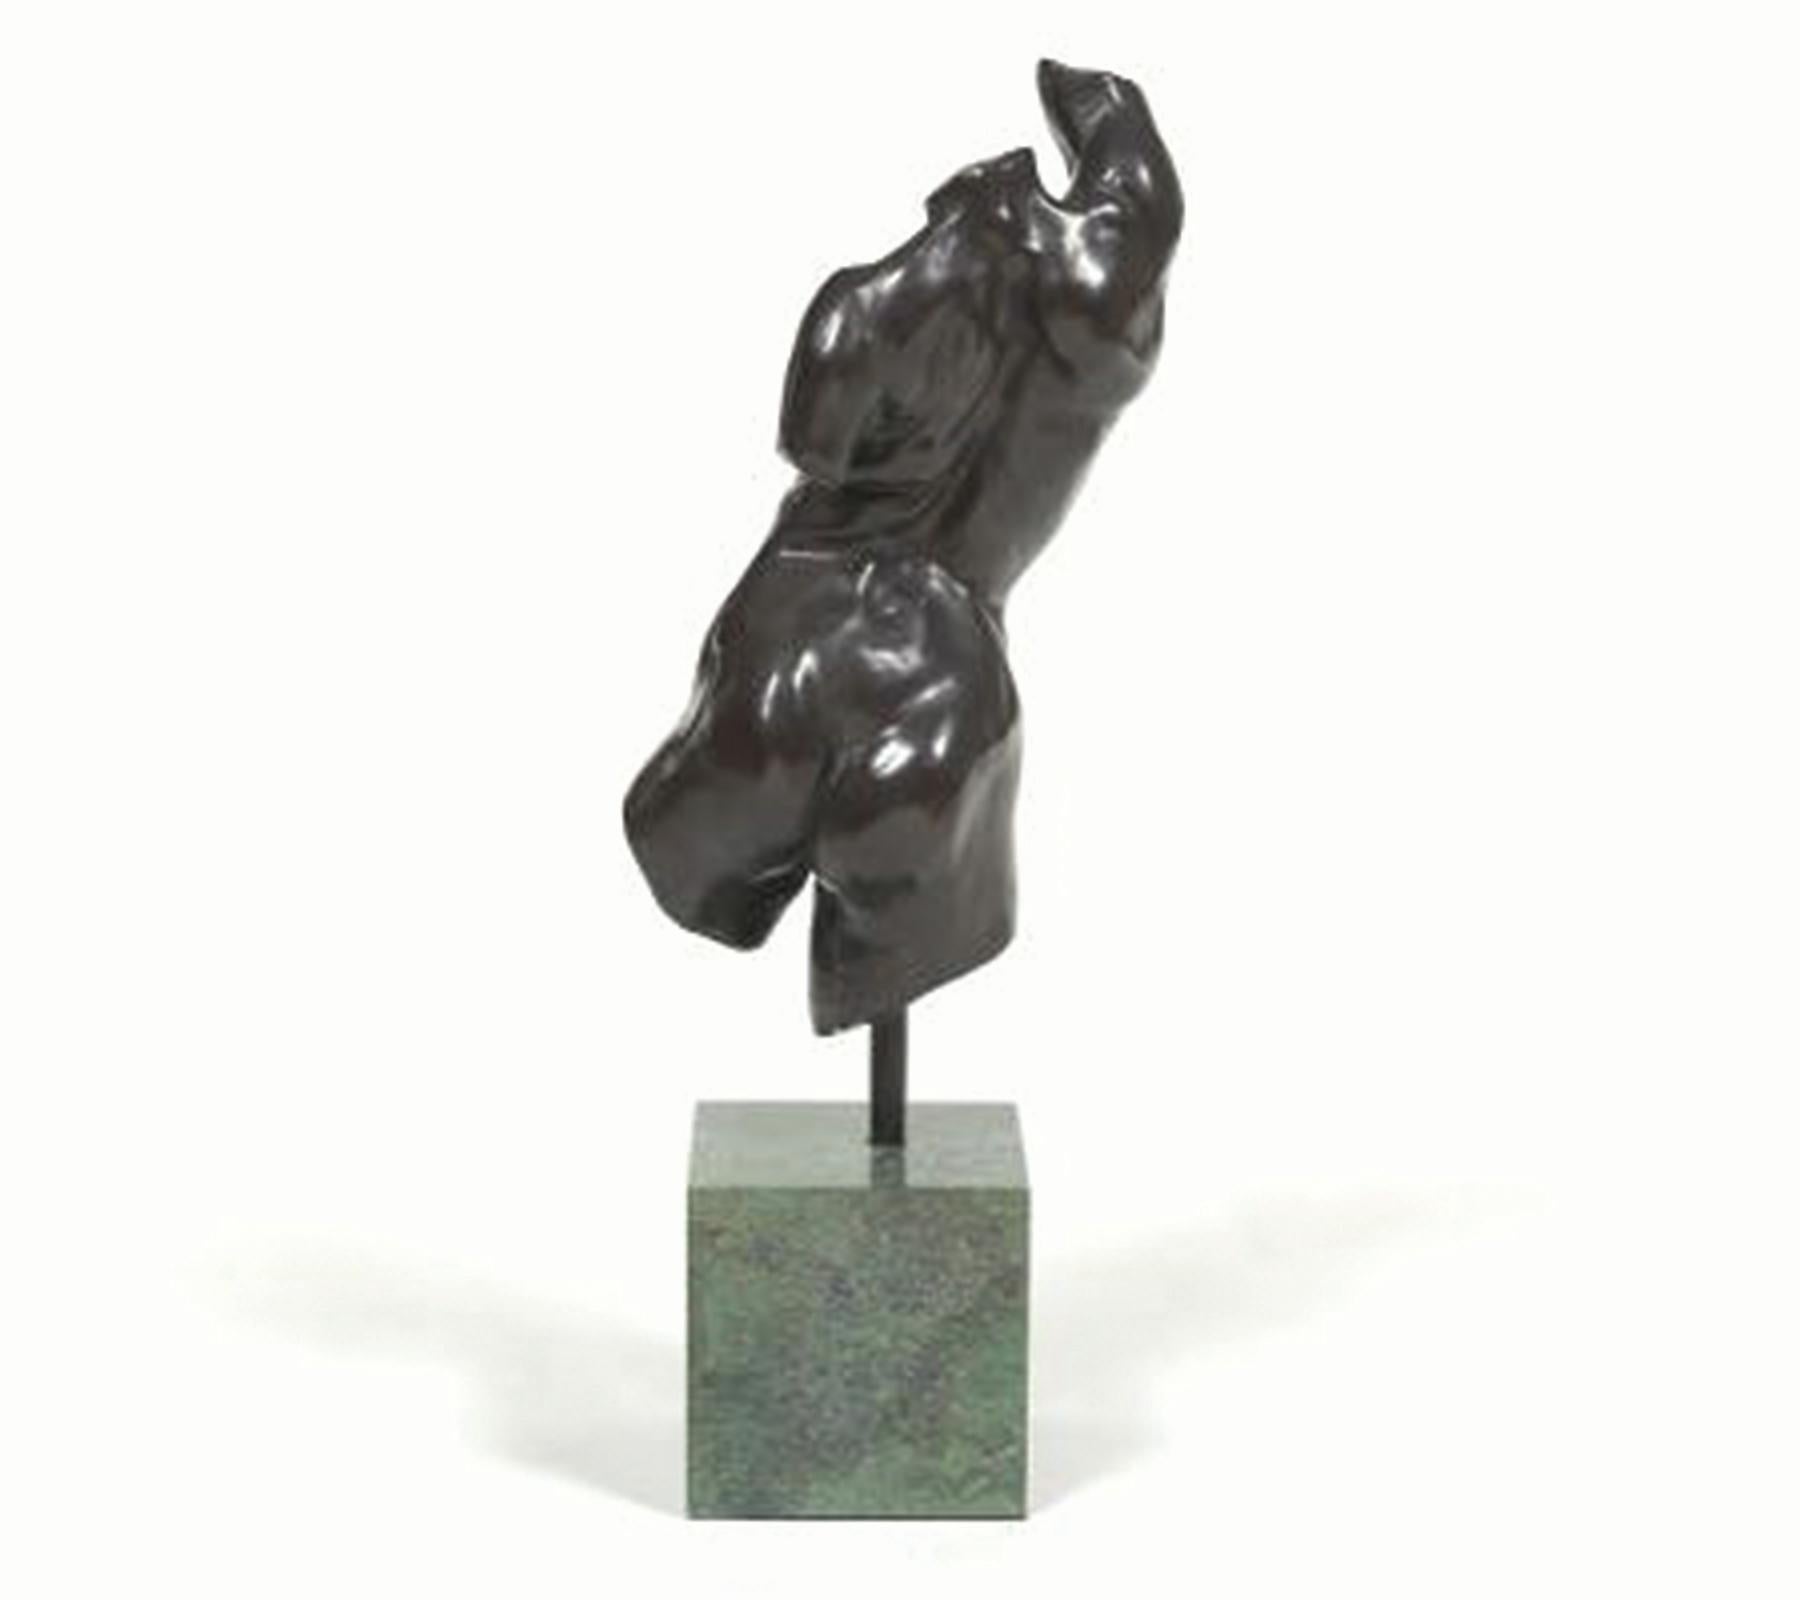 Alan Cottrill (estadounidense, Ohio, nacido en 1952)
Torso femenino desnudo, 1994
Bronce montado sobre base de mármol verde
Firmado, fechado y numerado 14/20 verso de la pata, con sello de fundición
17 pulg. alt. x 15 pulg. anch. x 15 pulg.